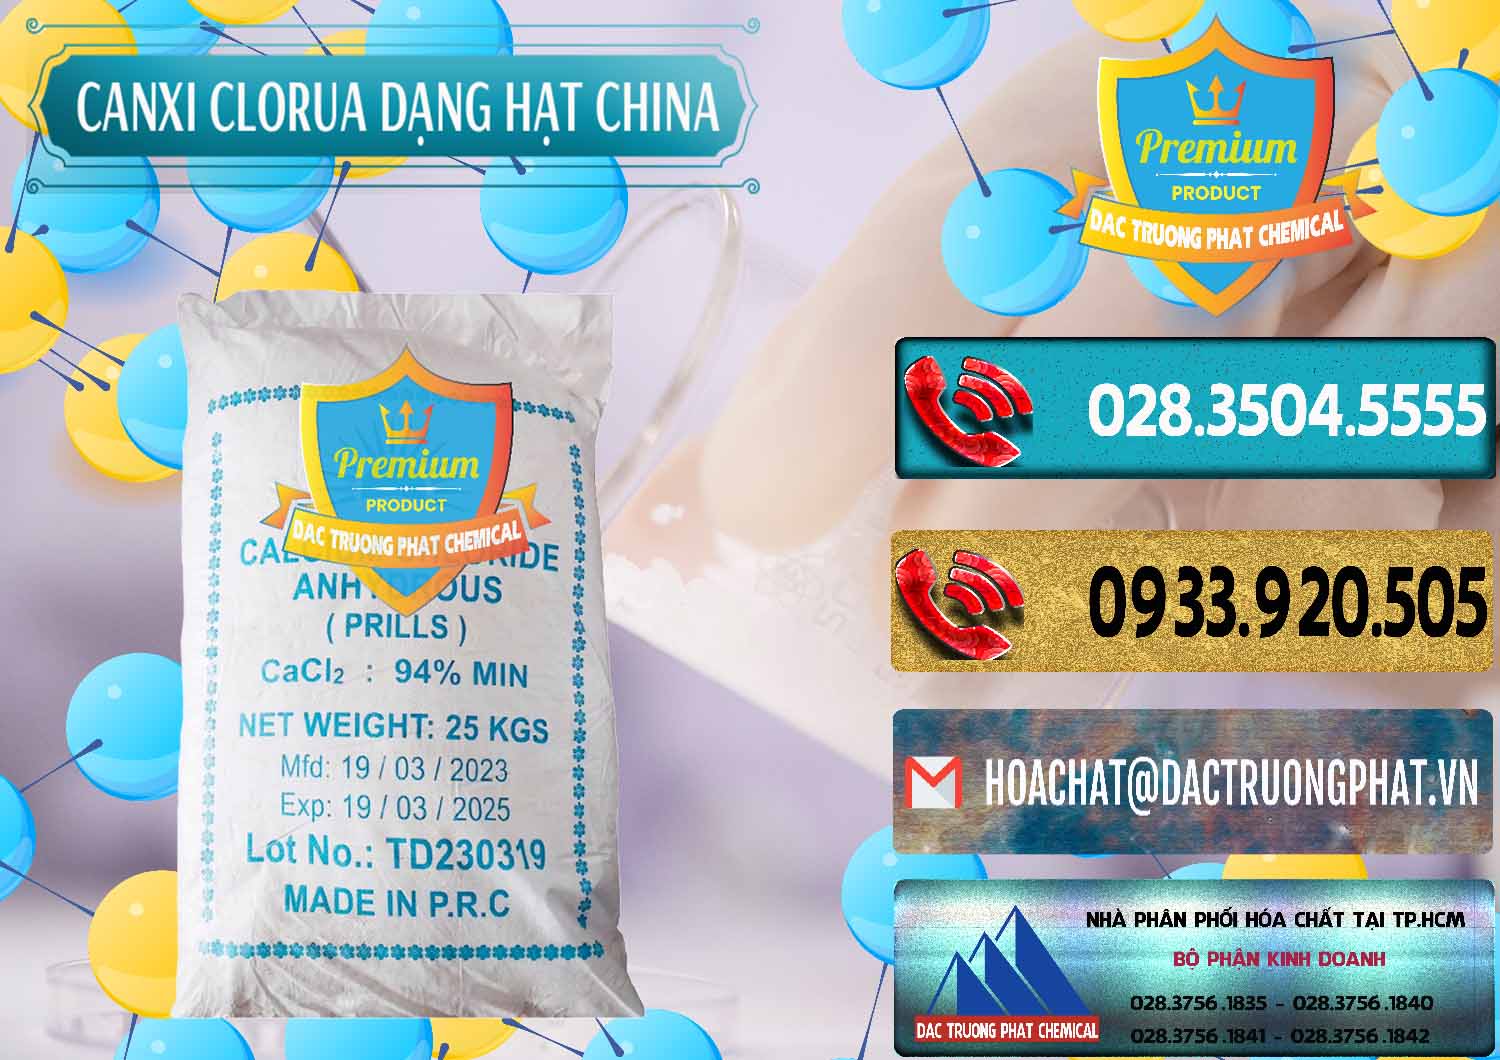 Công ty chuyên cung cấp _ bán CaCl2 – Canxi Clorua 94% Dạng Hạt Trung Quốc China - 0373 - Cty bán - cung cấp hóa chất tại TP.HCM - hoachatdetnhuom.com